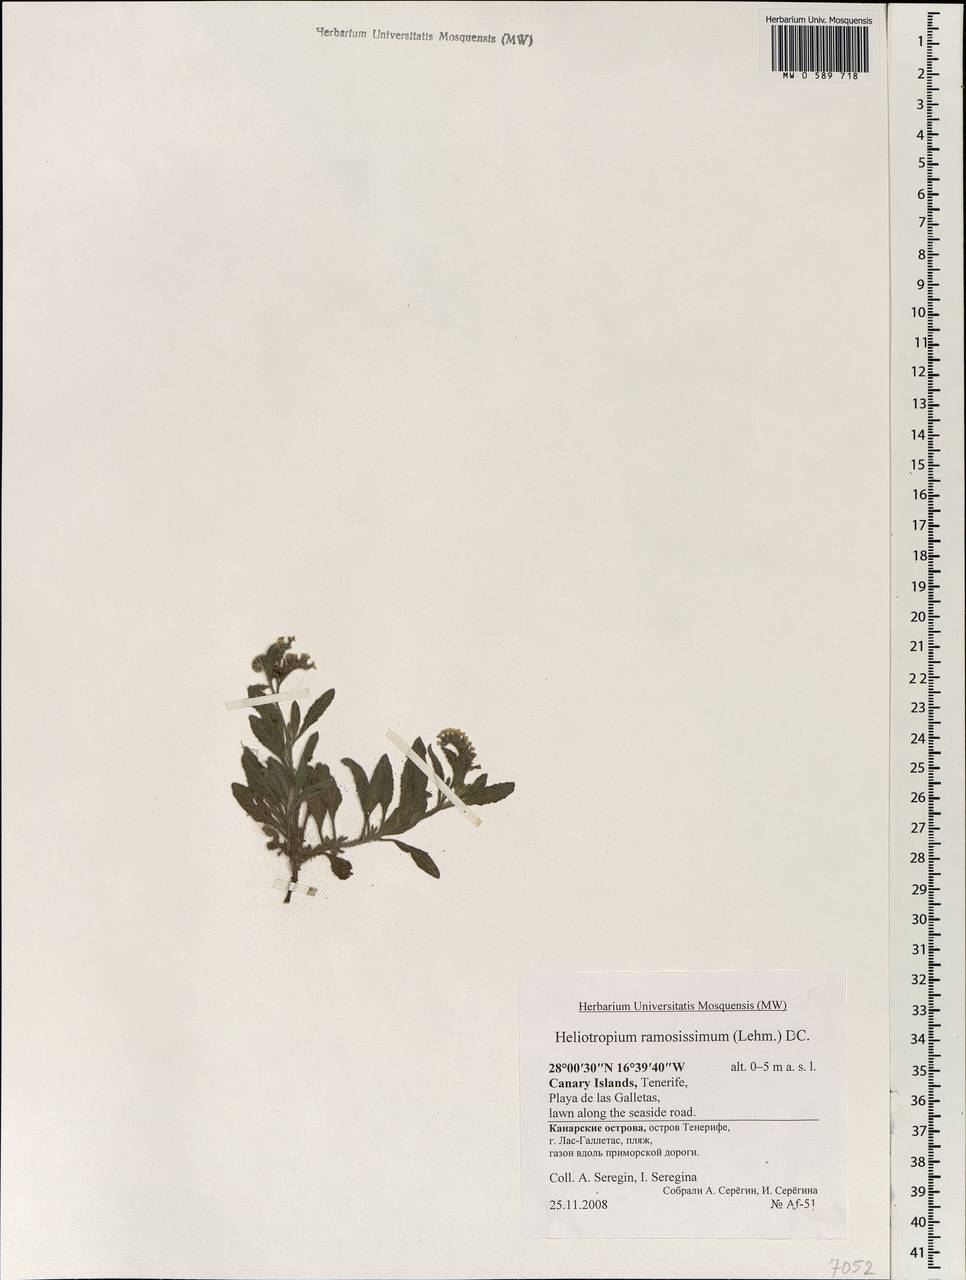 Heliotropium ramosissimum (Lehm.) Sieber ex DC., Африка (AFR) (Испания)